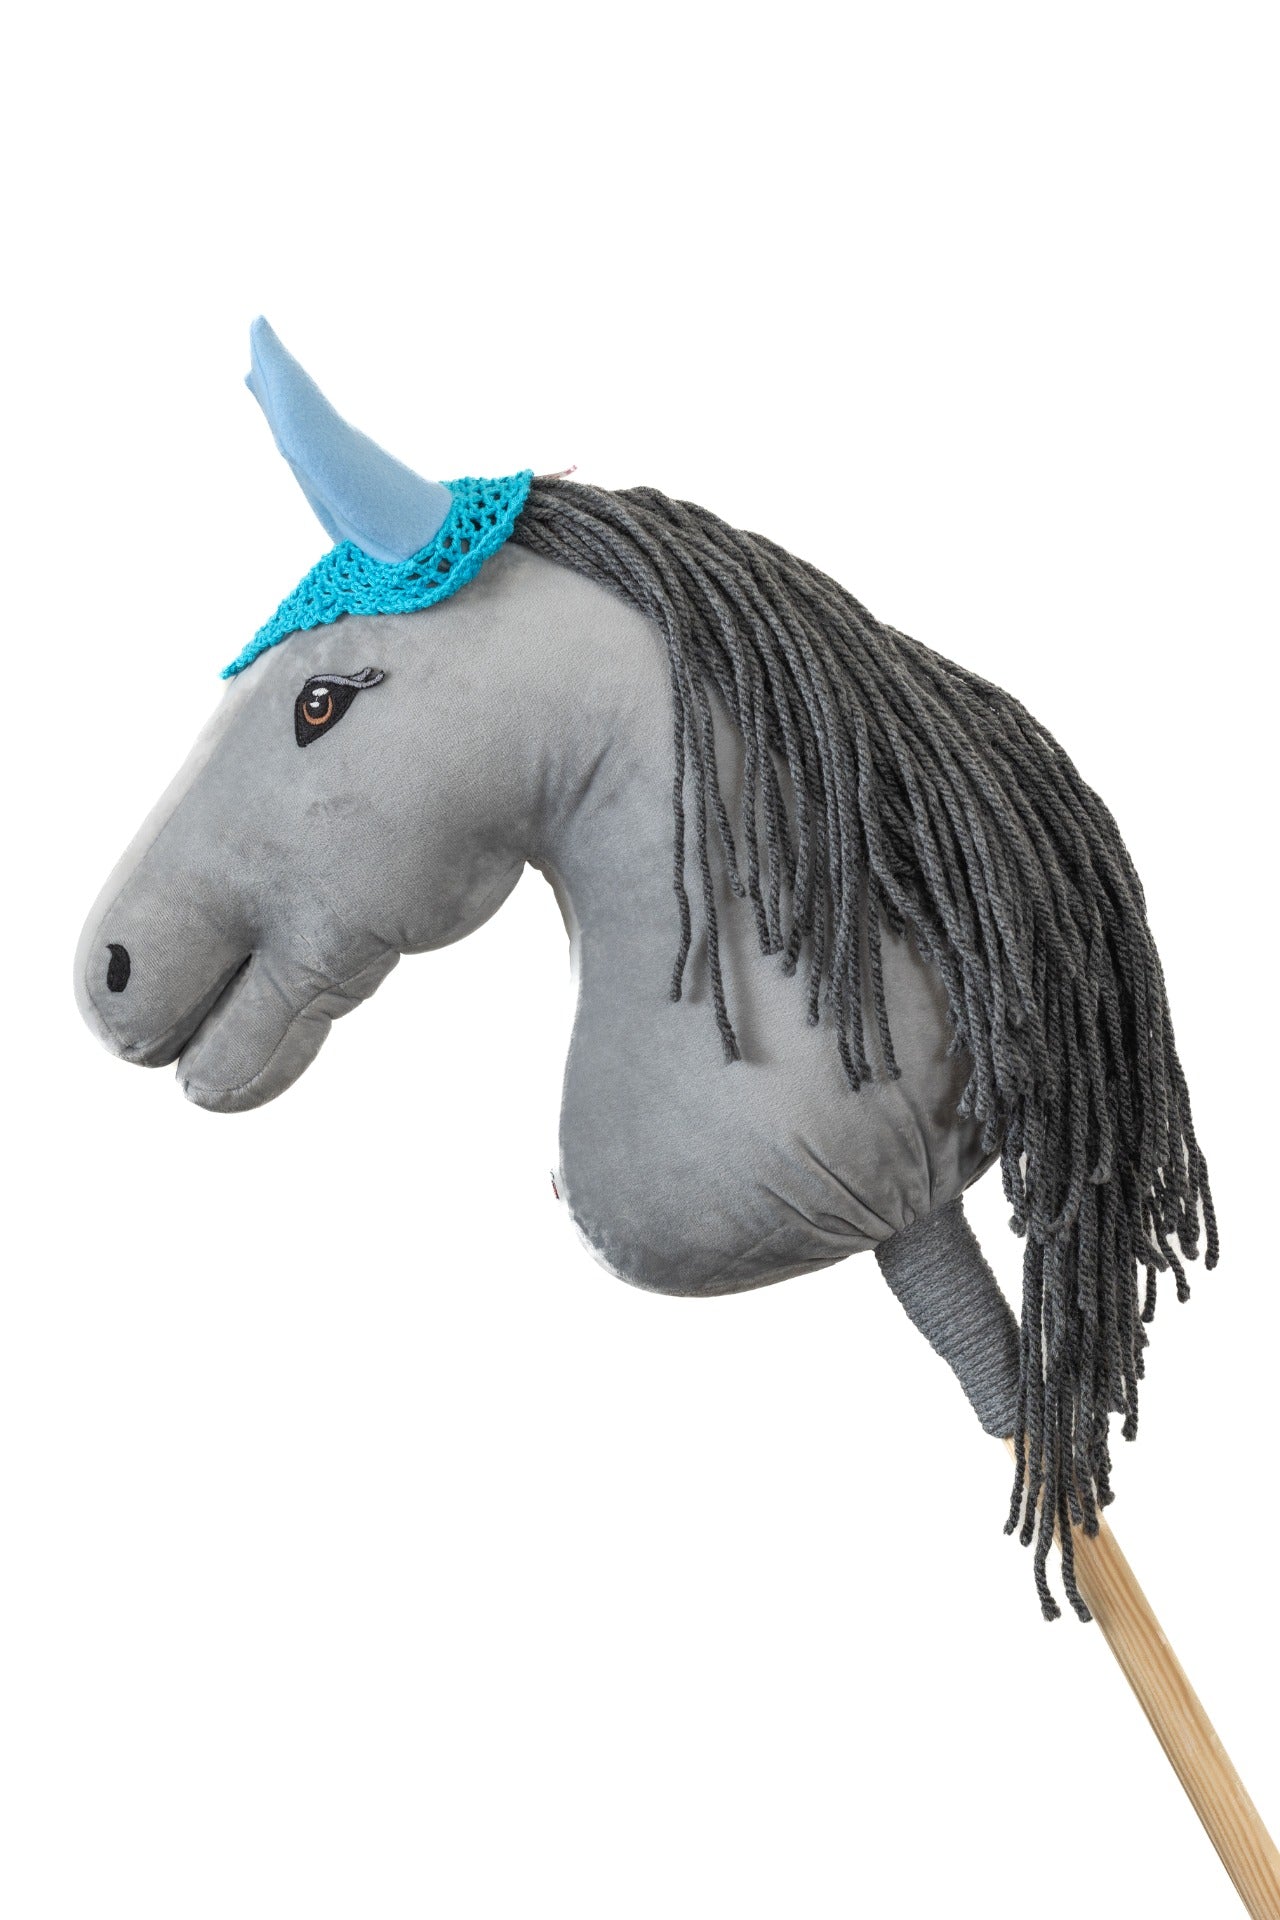 Čabraka háčkovaná - Tyrkysová s modrýma ušima - Dospělý kůň